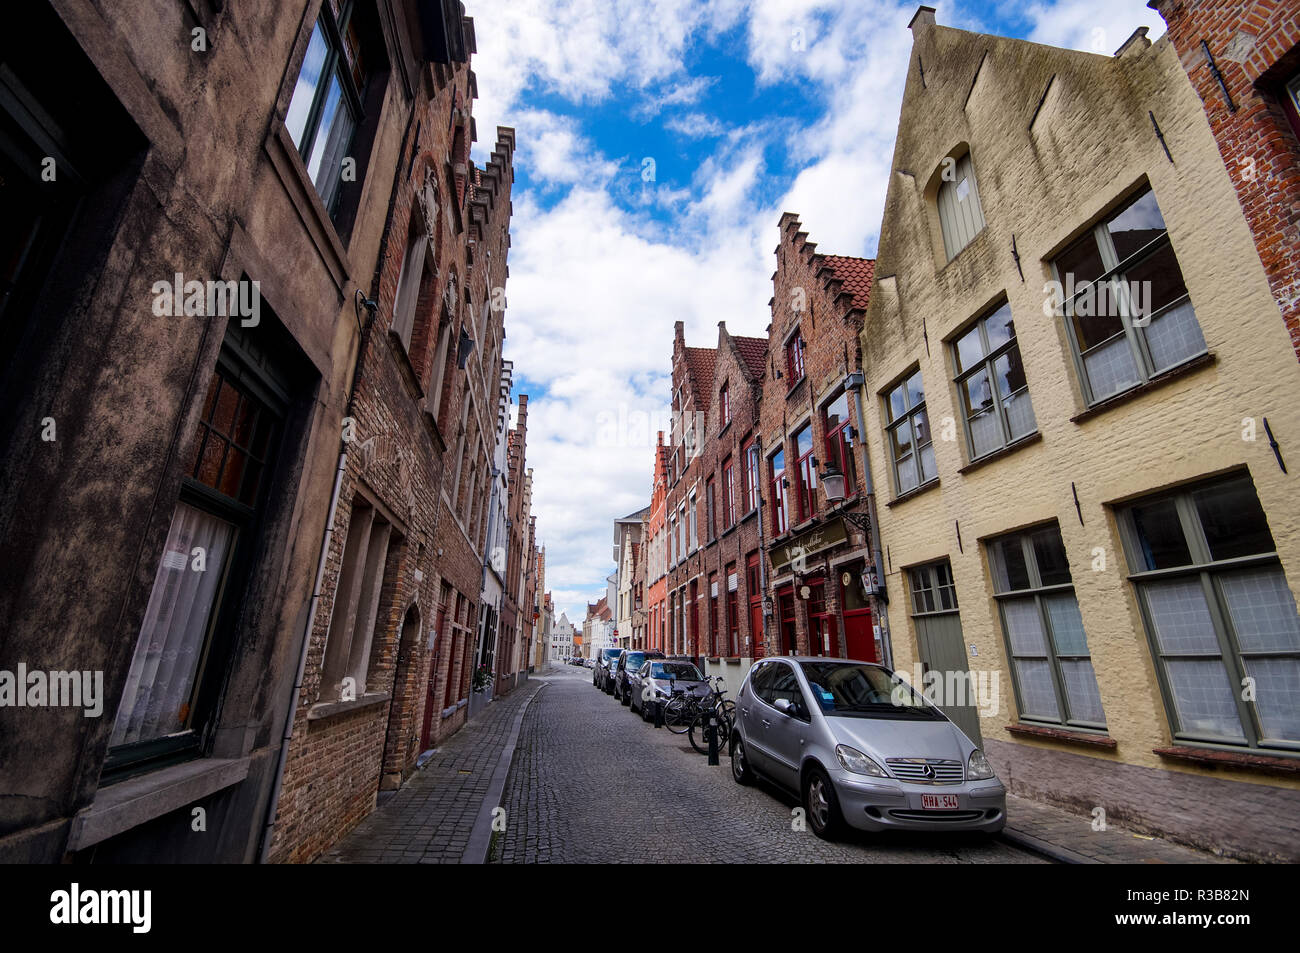 Typische alte gepflasterte Straße mit traditionellen gemauerte Häuser in Brügge, Belgien. Stockfoto